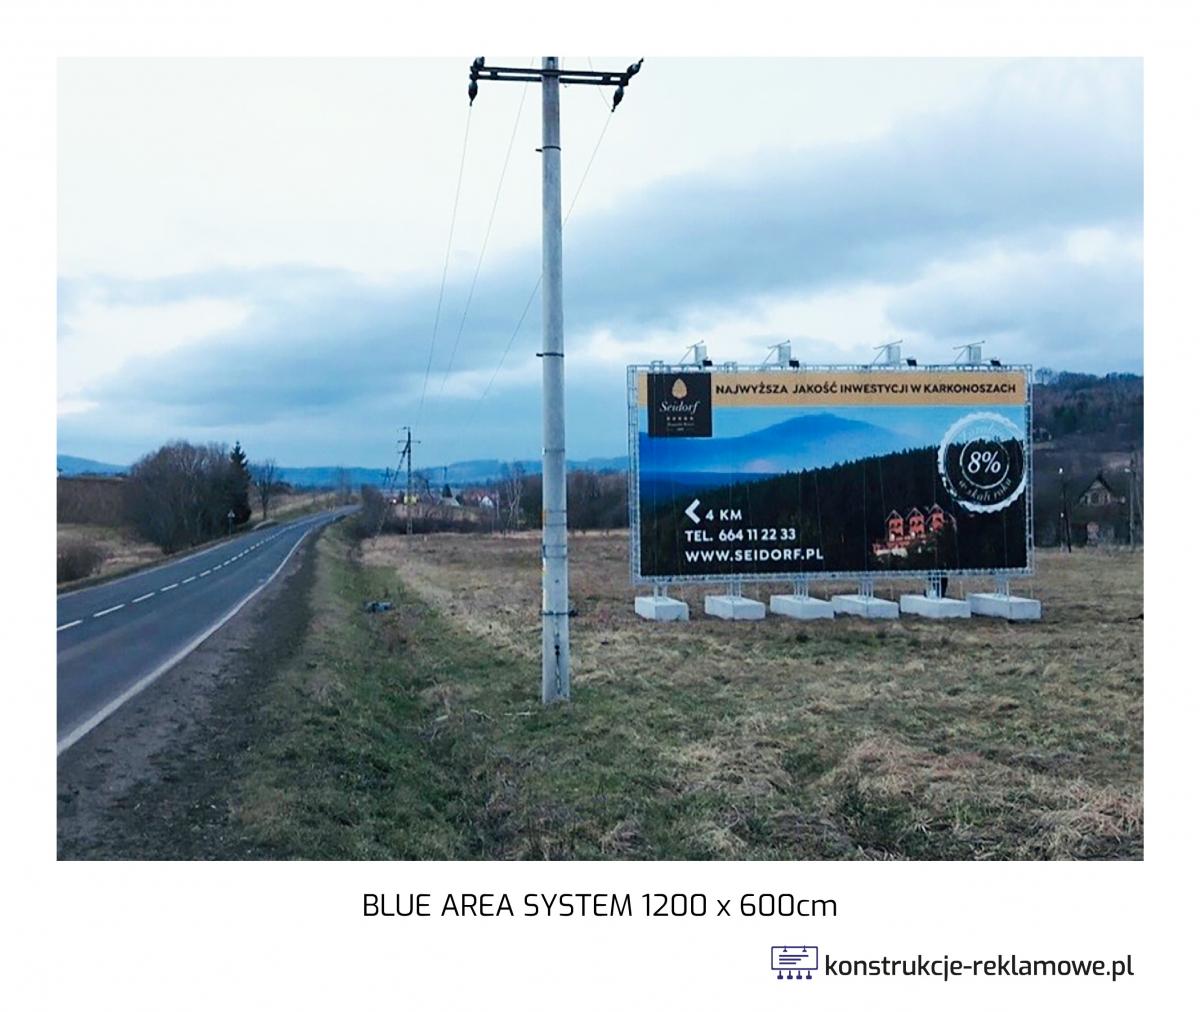 Blue Area System bilboard 1200 x 600cm - konstrukcje-reklamowe.pl